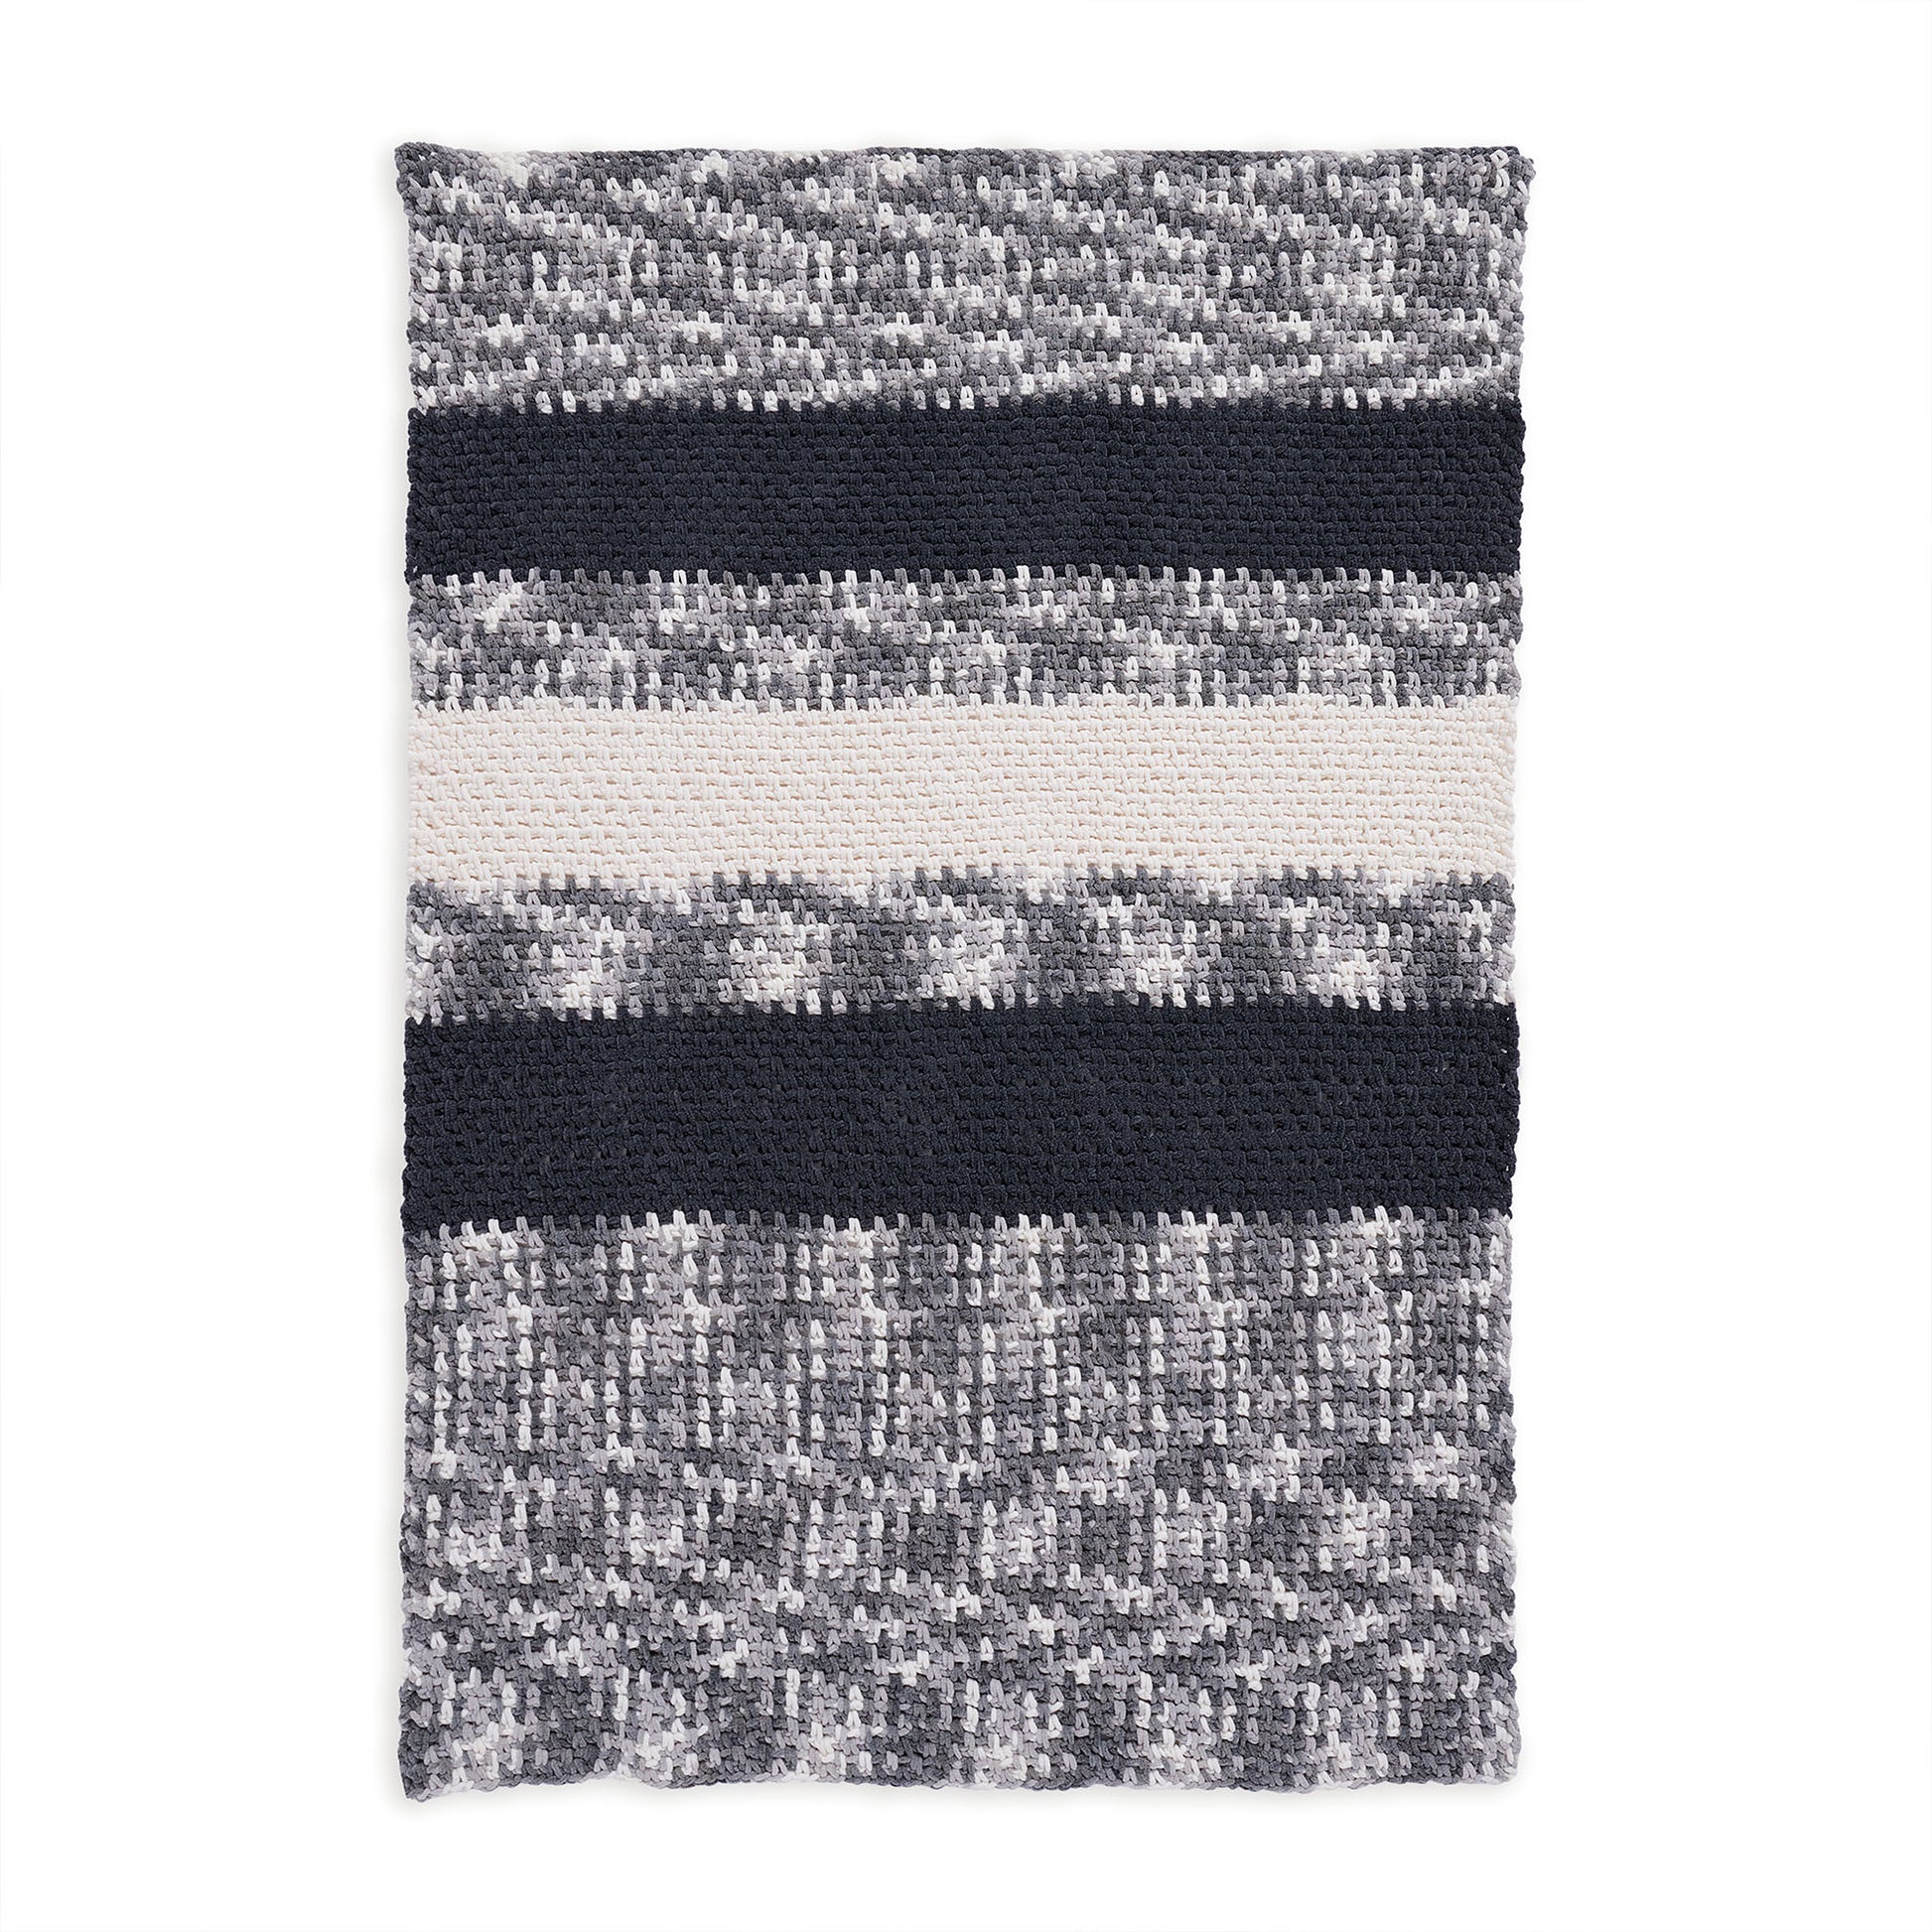 Free Bernat Crochet Mass of Moss Stitch Blanket Pattern